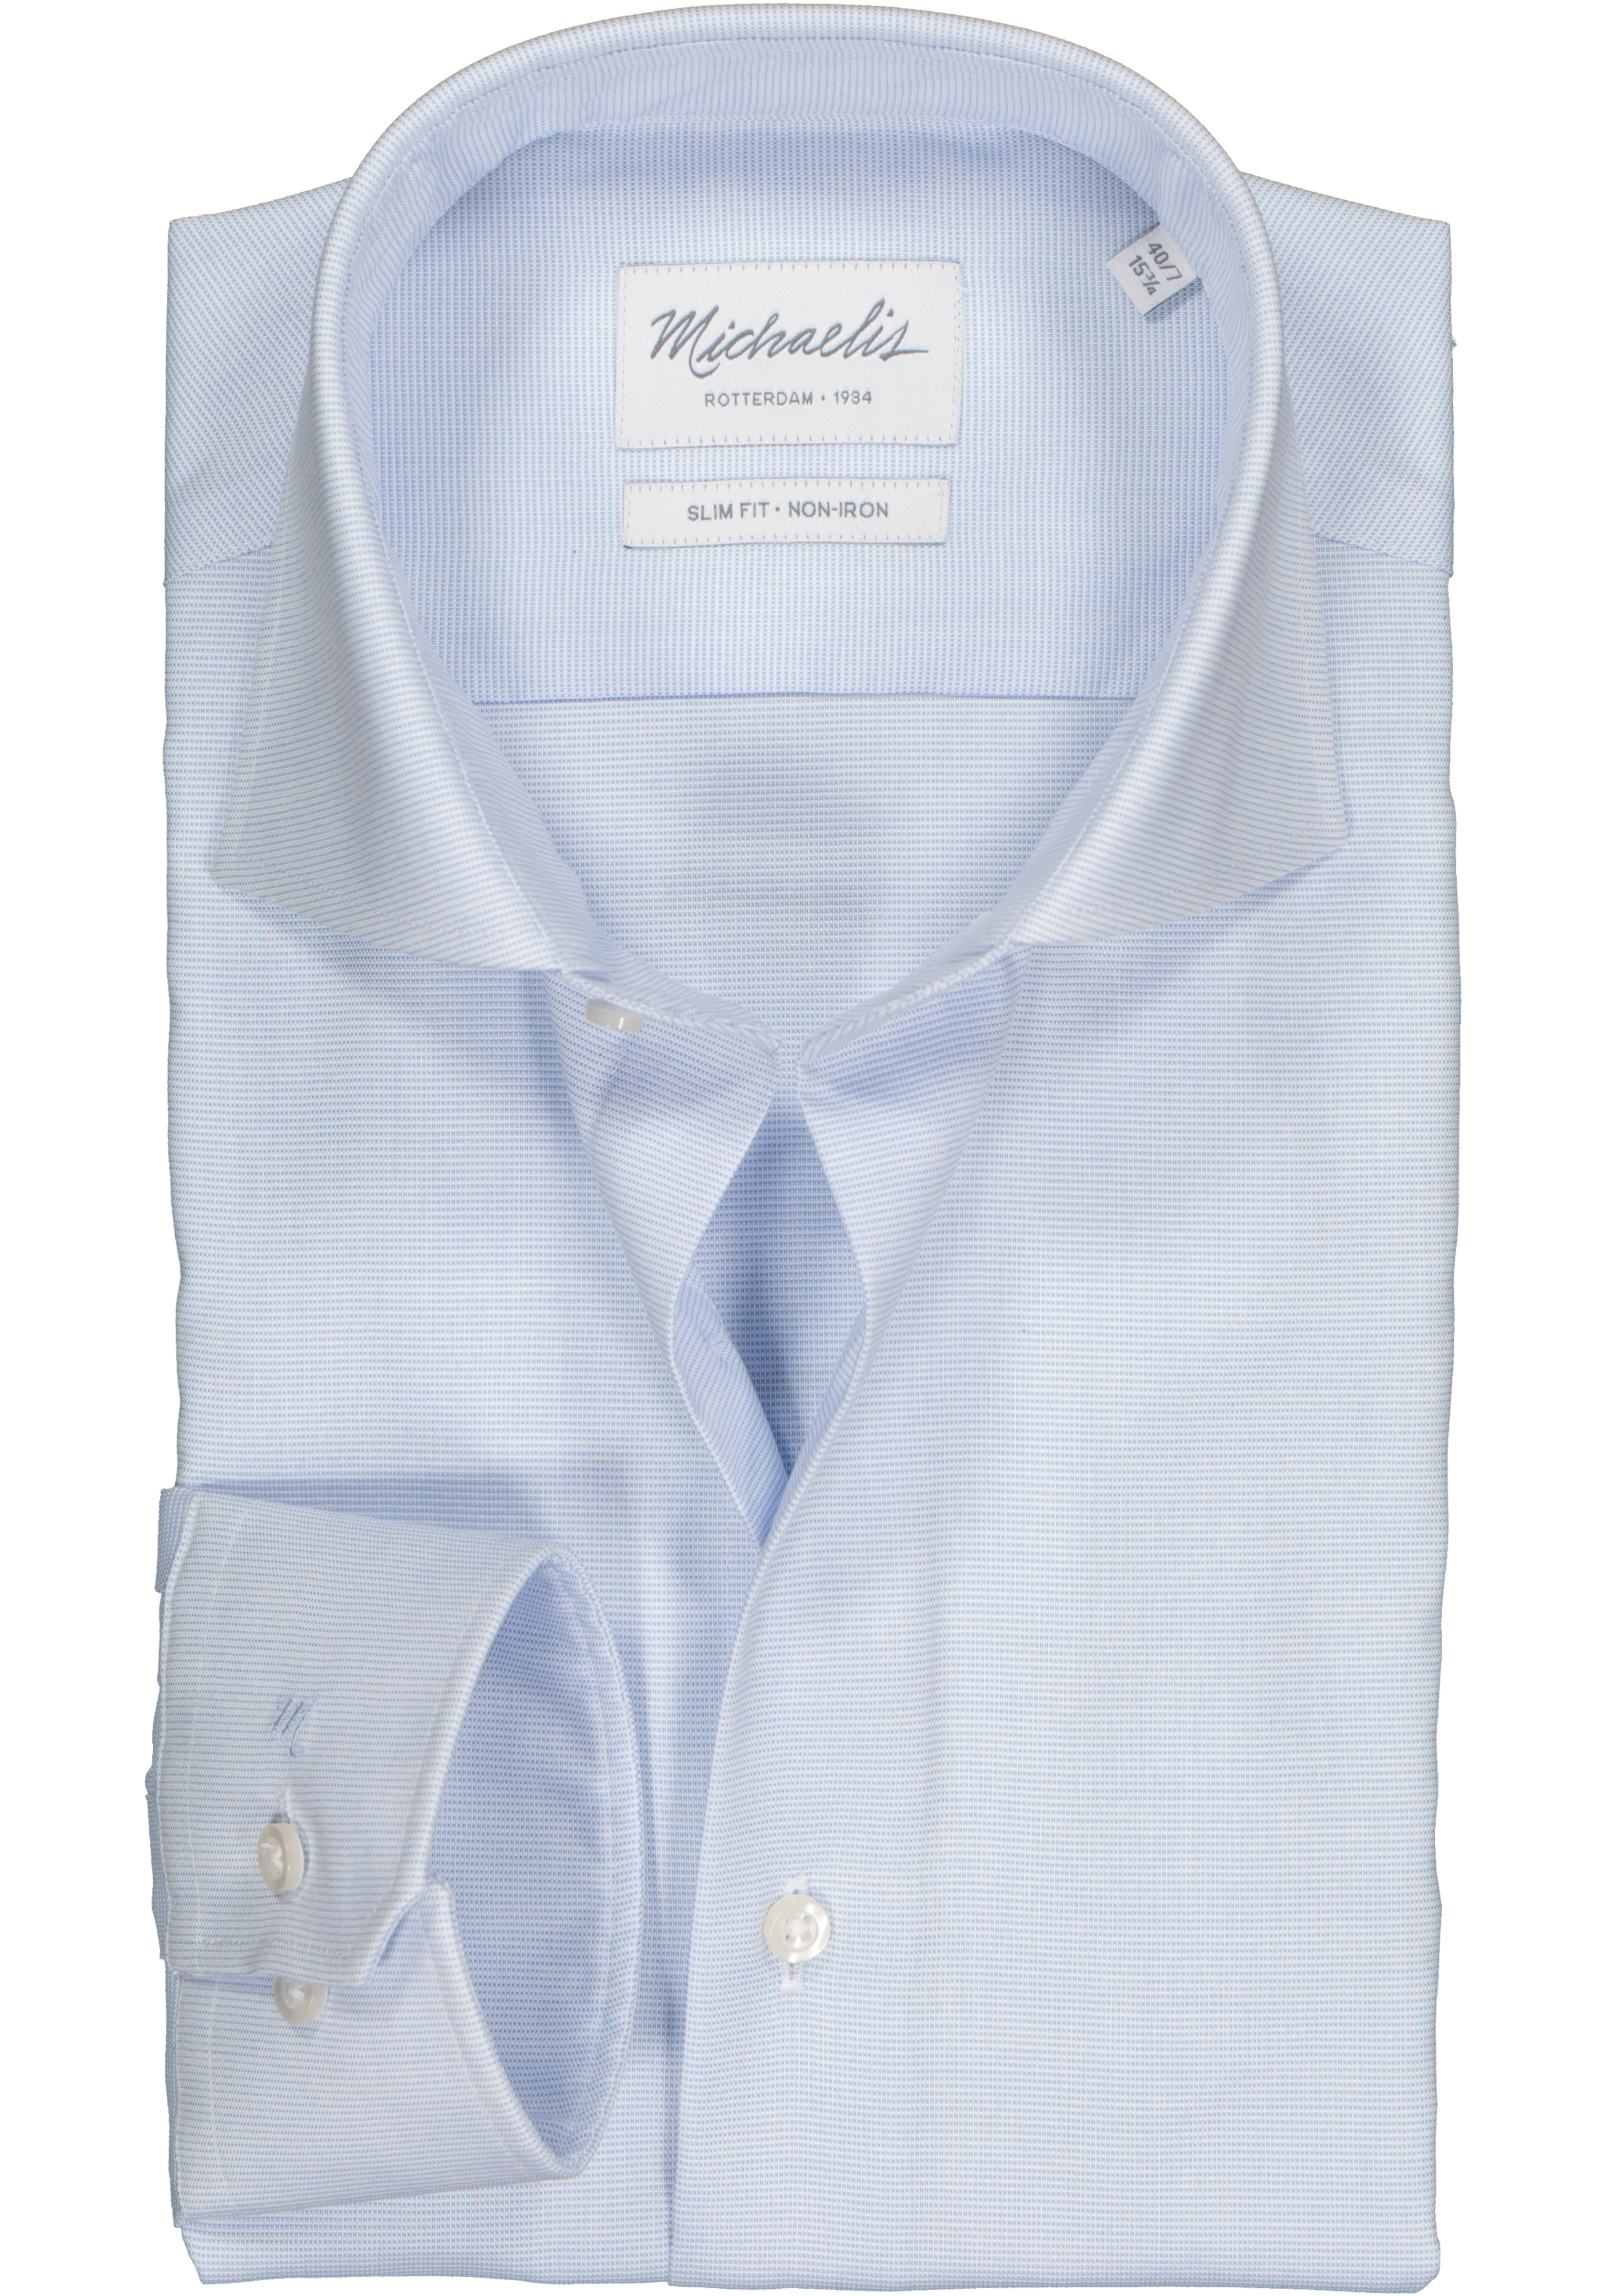 Op het randje vasthoudend Oppervlakkig Michaelis Slim Fit overhemd, mouwlengte 7, licht blauw - Gratis bezorgd